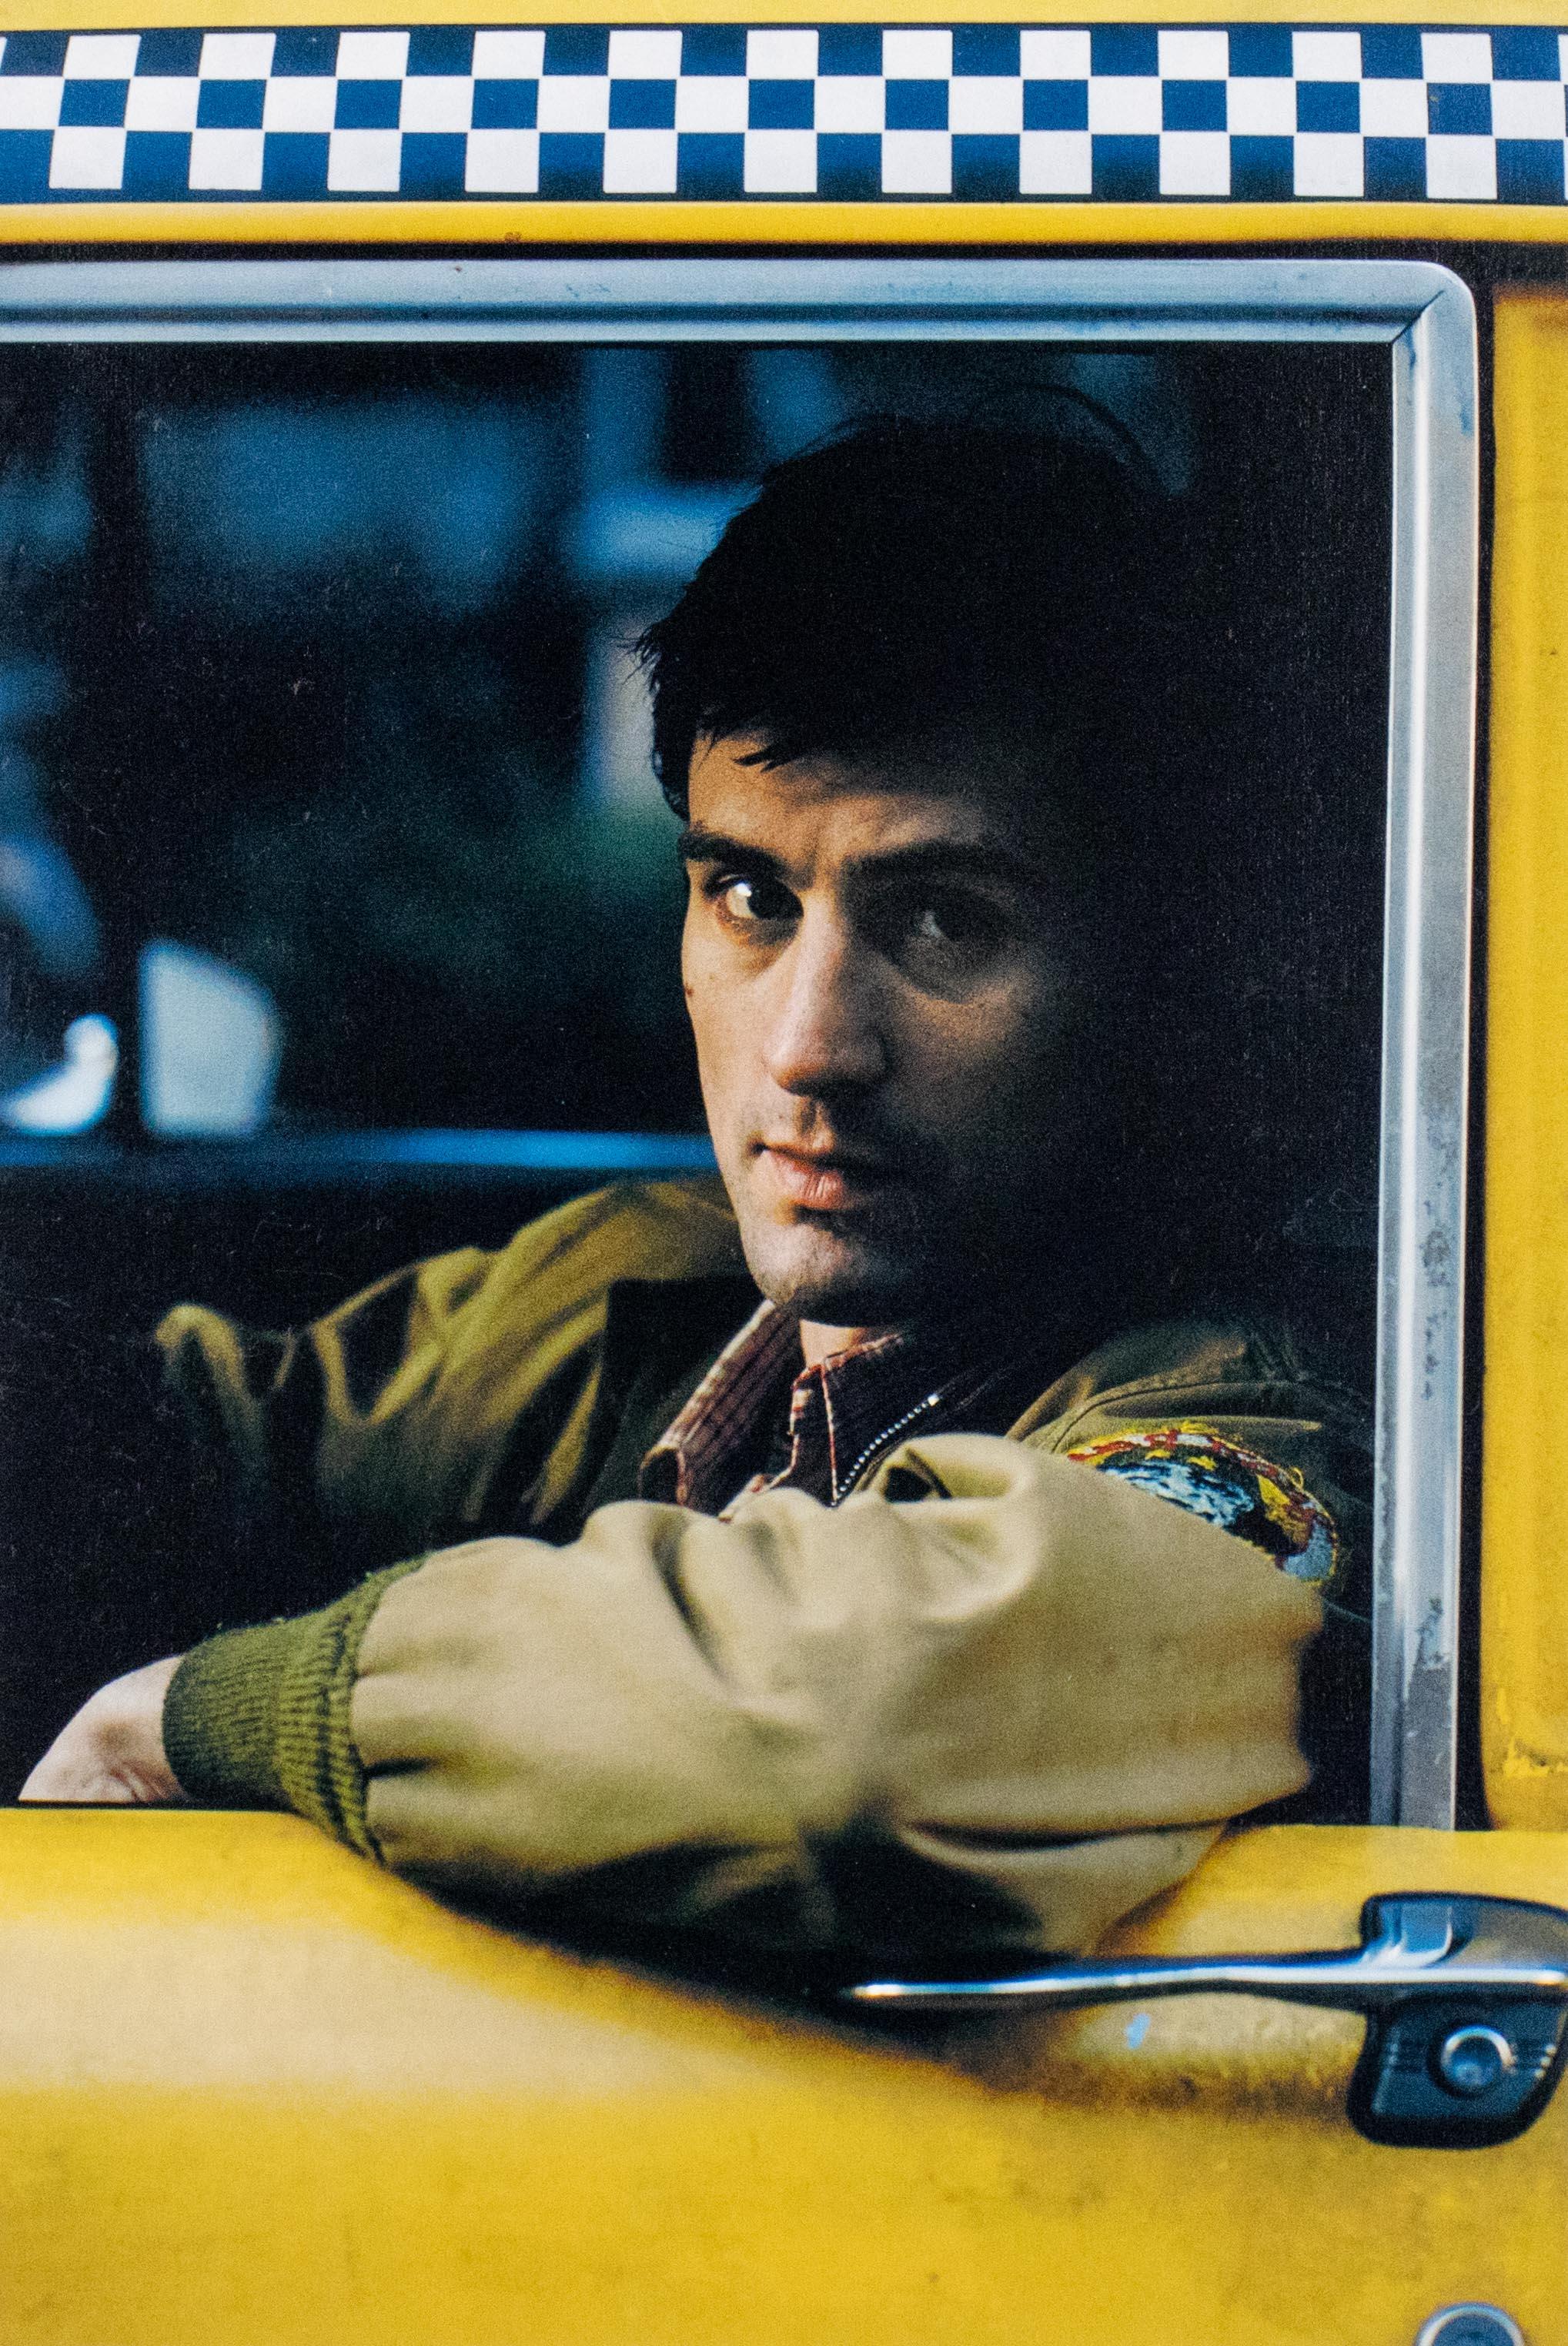 Robert DeNiro als Taxifahrer – handsignierte Fotografie – Photograph von Steve Schapiro